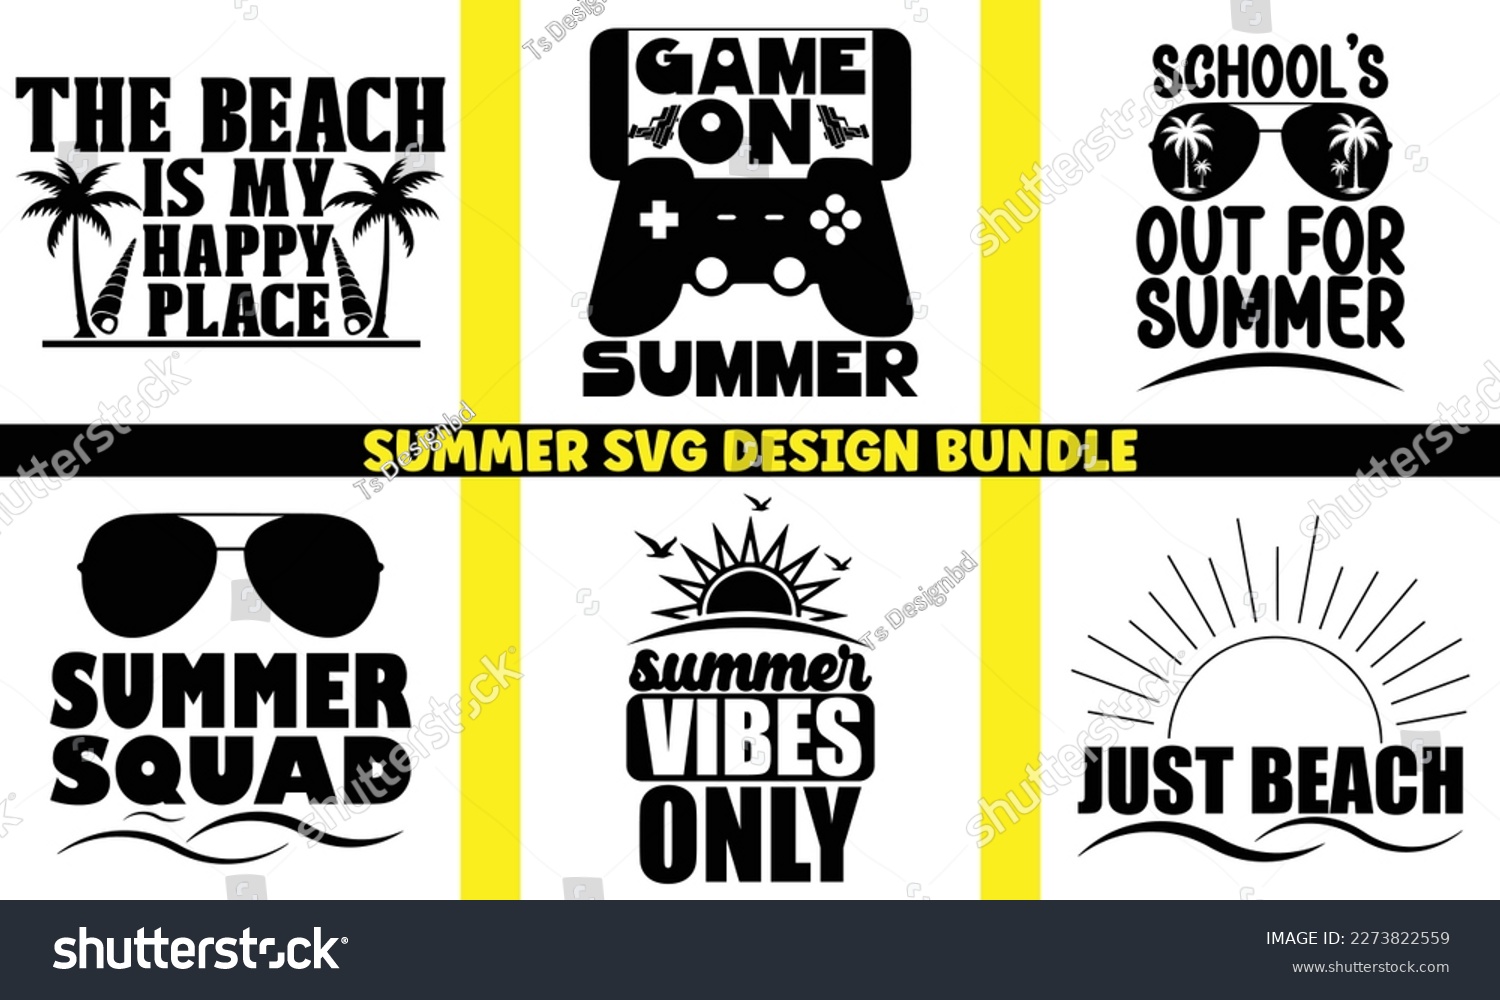 SVG of summer SVG design bundle Cut Files,Summer Beach Bundle SVG,Summer Quotes SVG Designs Bundle,Funny Summer quotes SVG cut files bundle,Hello Summer quotes t shirt designs bundle, Quotes about Summer, svg